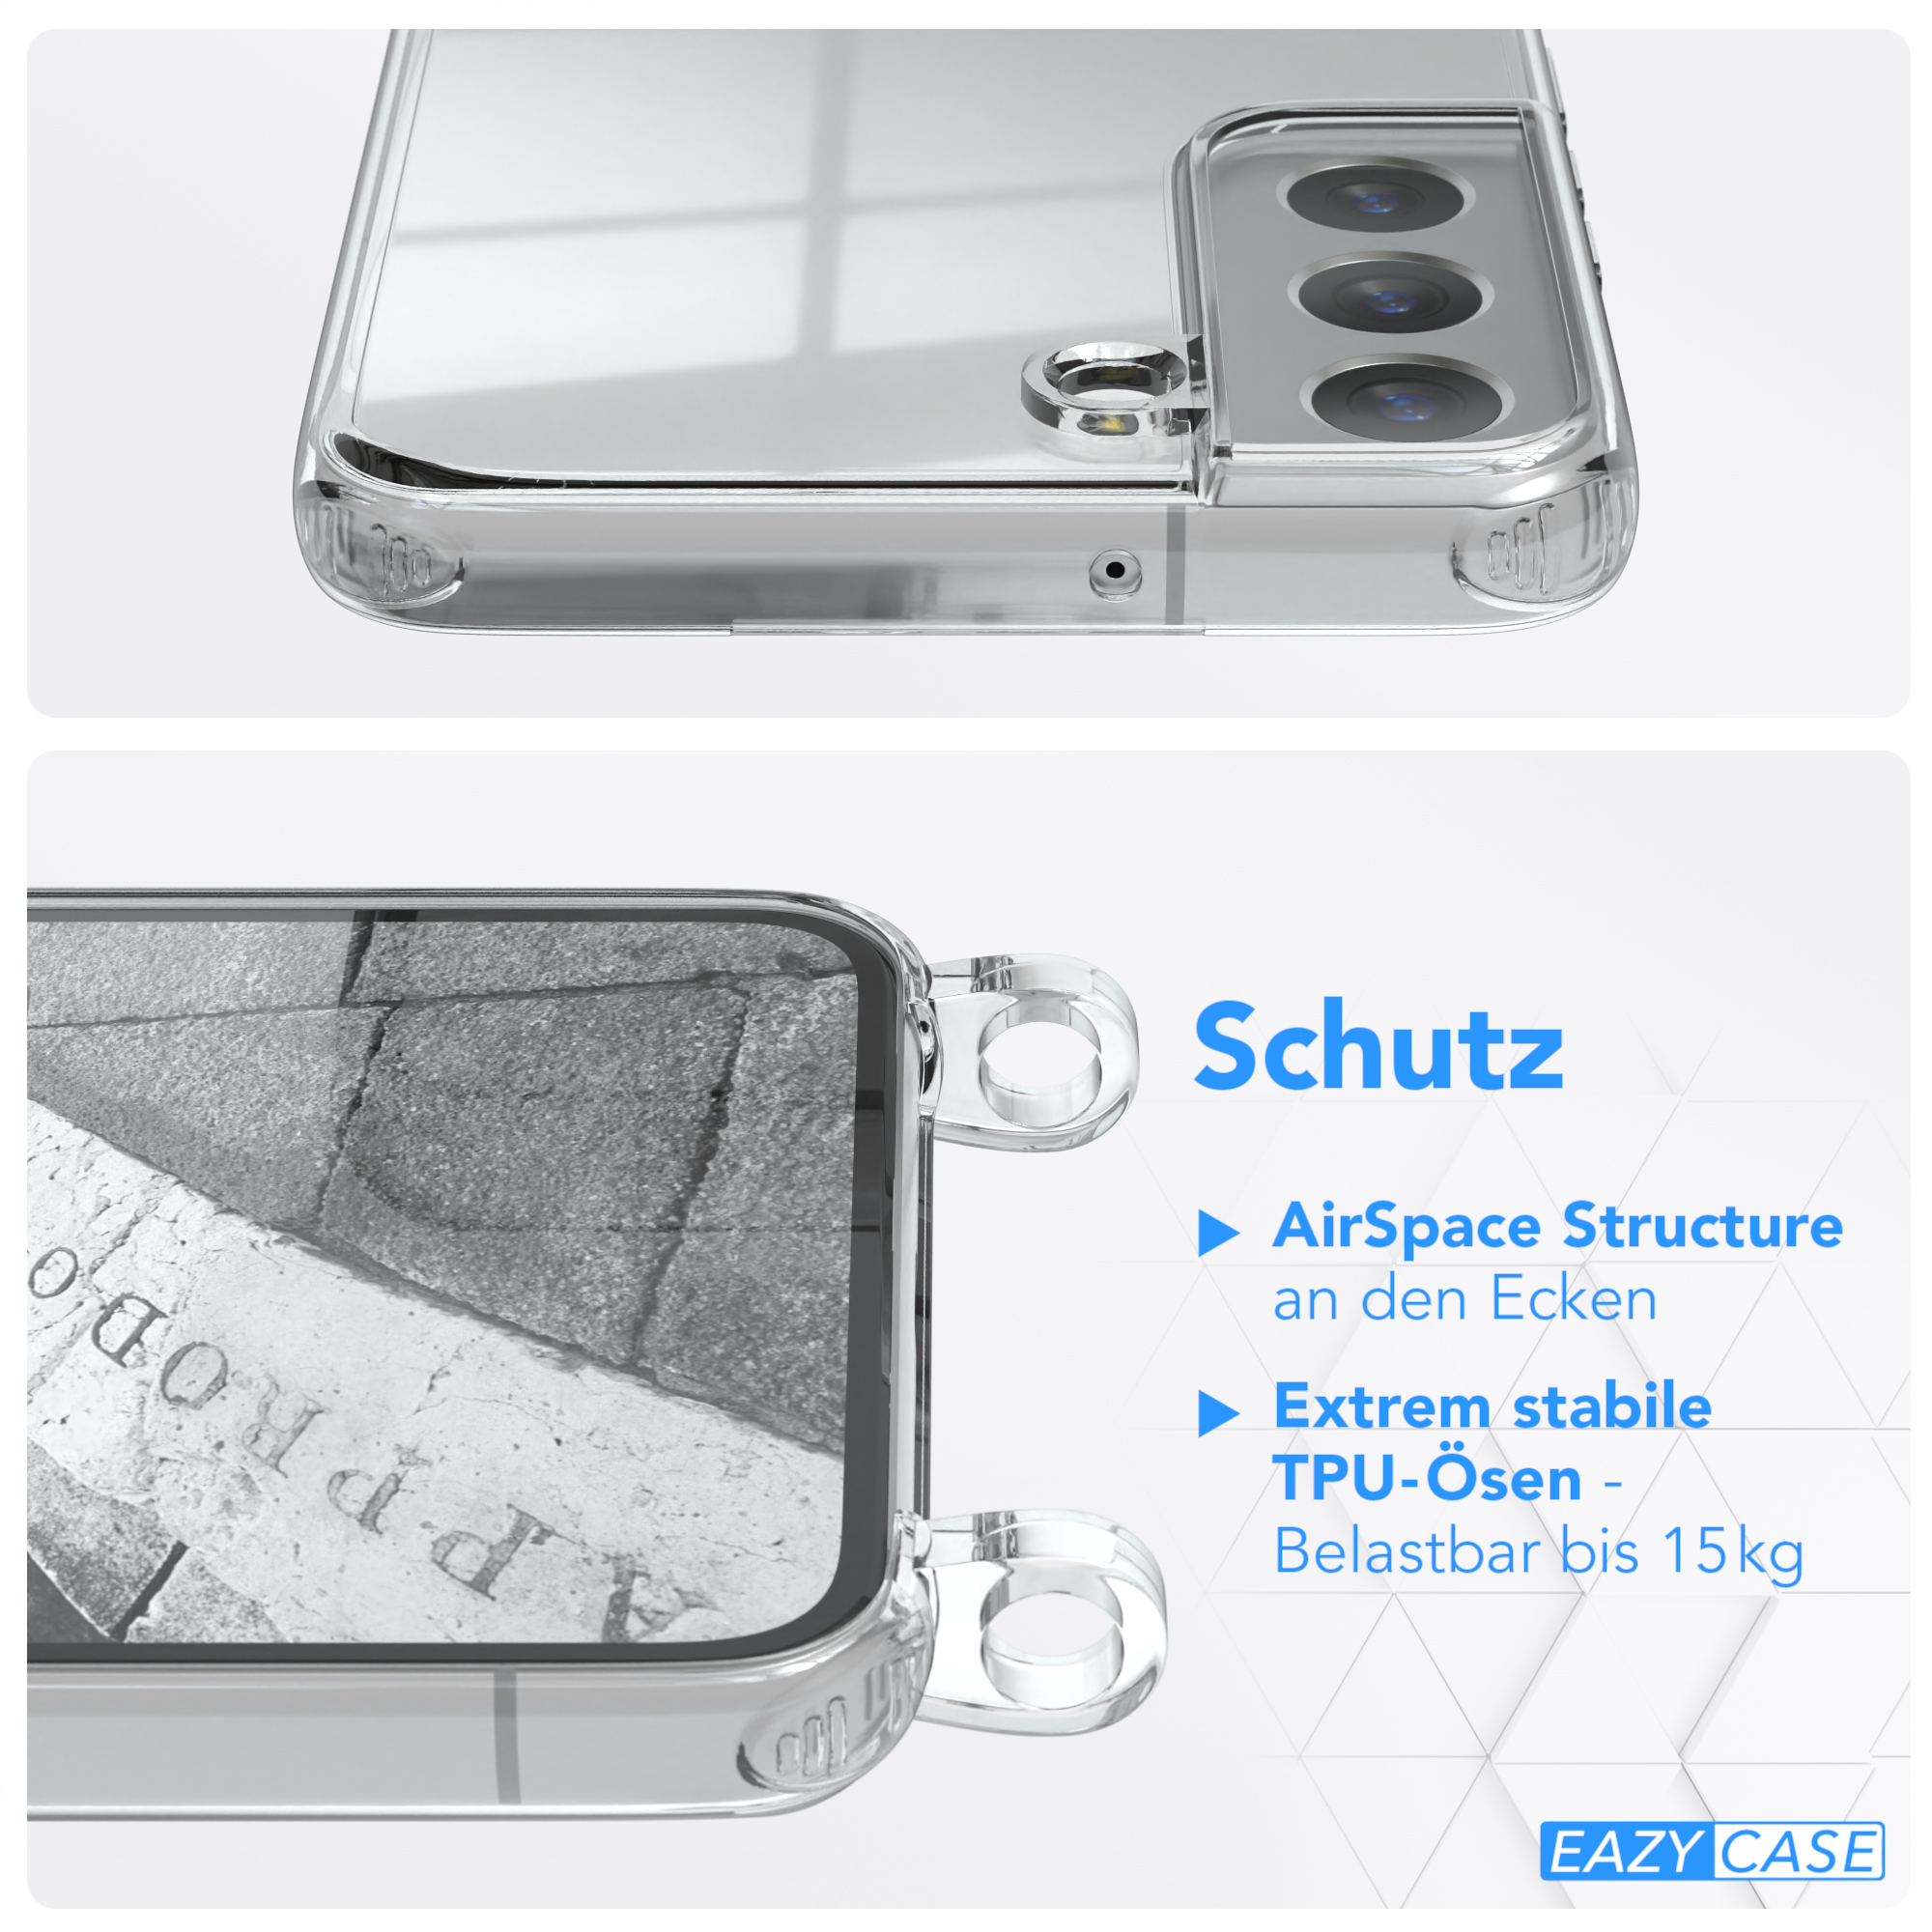 Samsung, Umhängeband, Clear Umhängetasche, Schwarz Galaxy EAZY Clips / 5G, Cover Silber S22 mit Camouflage CASE